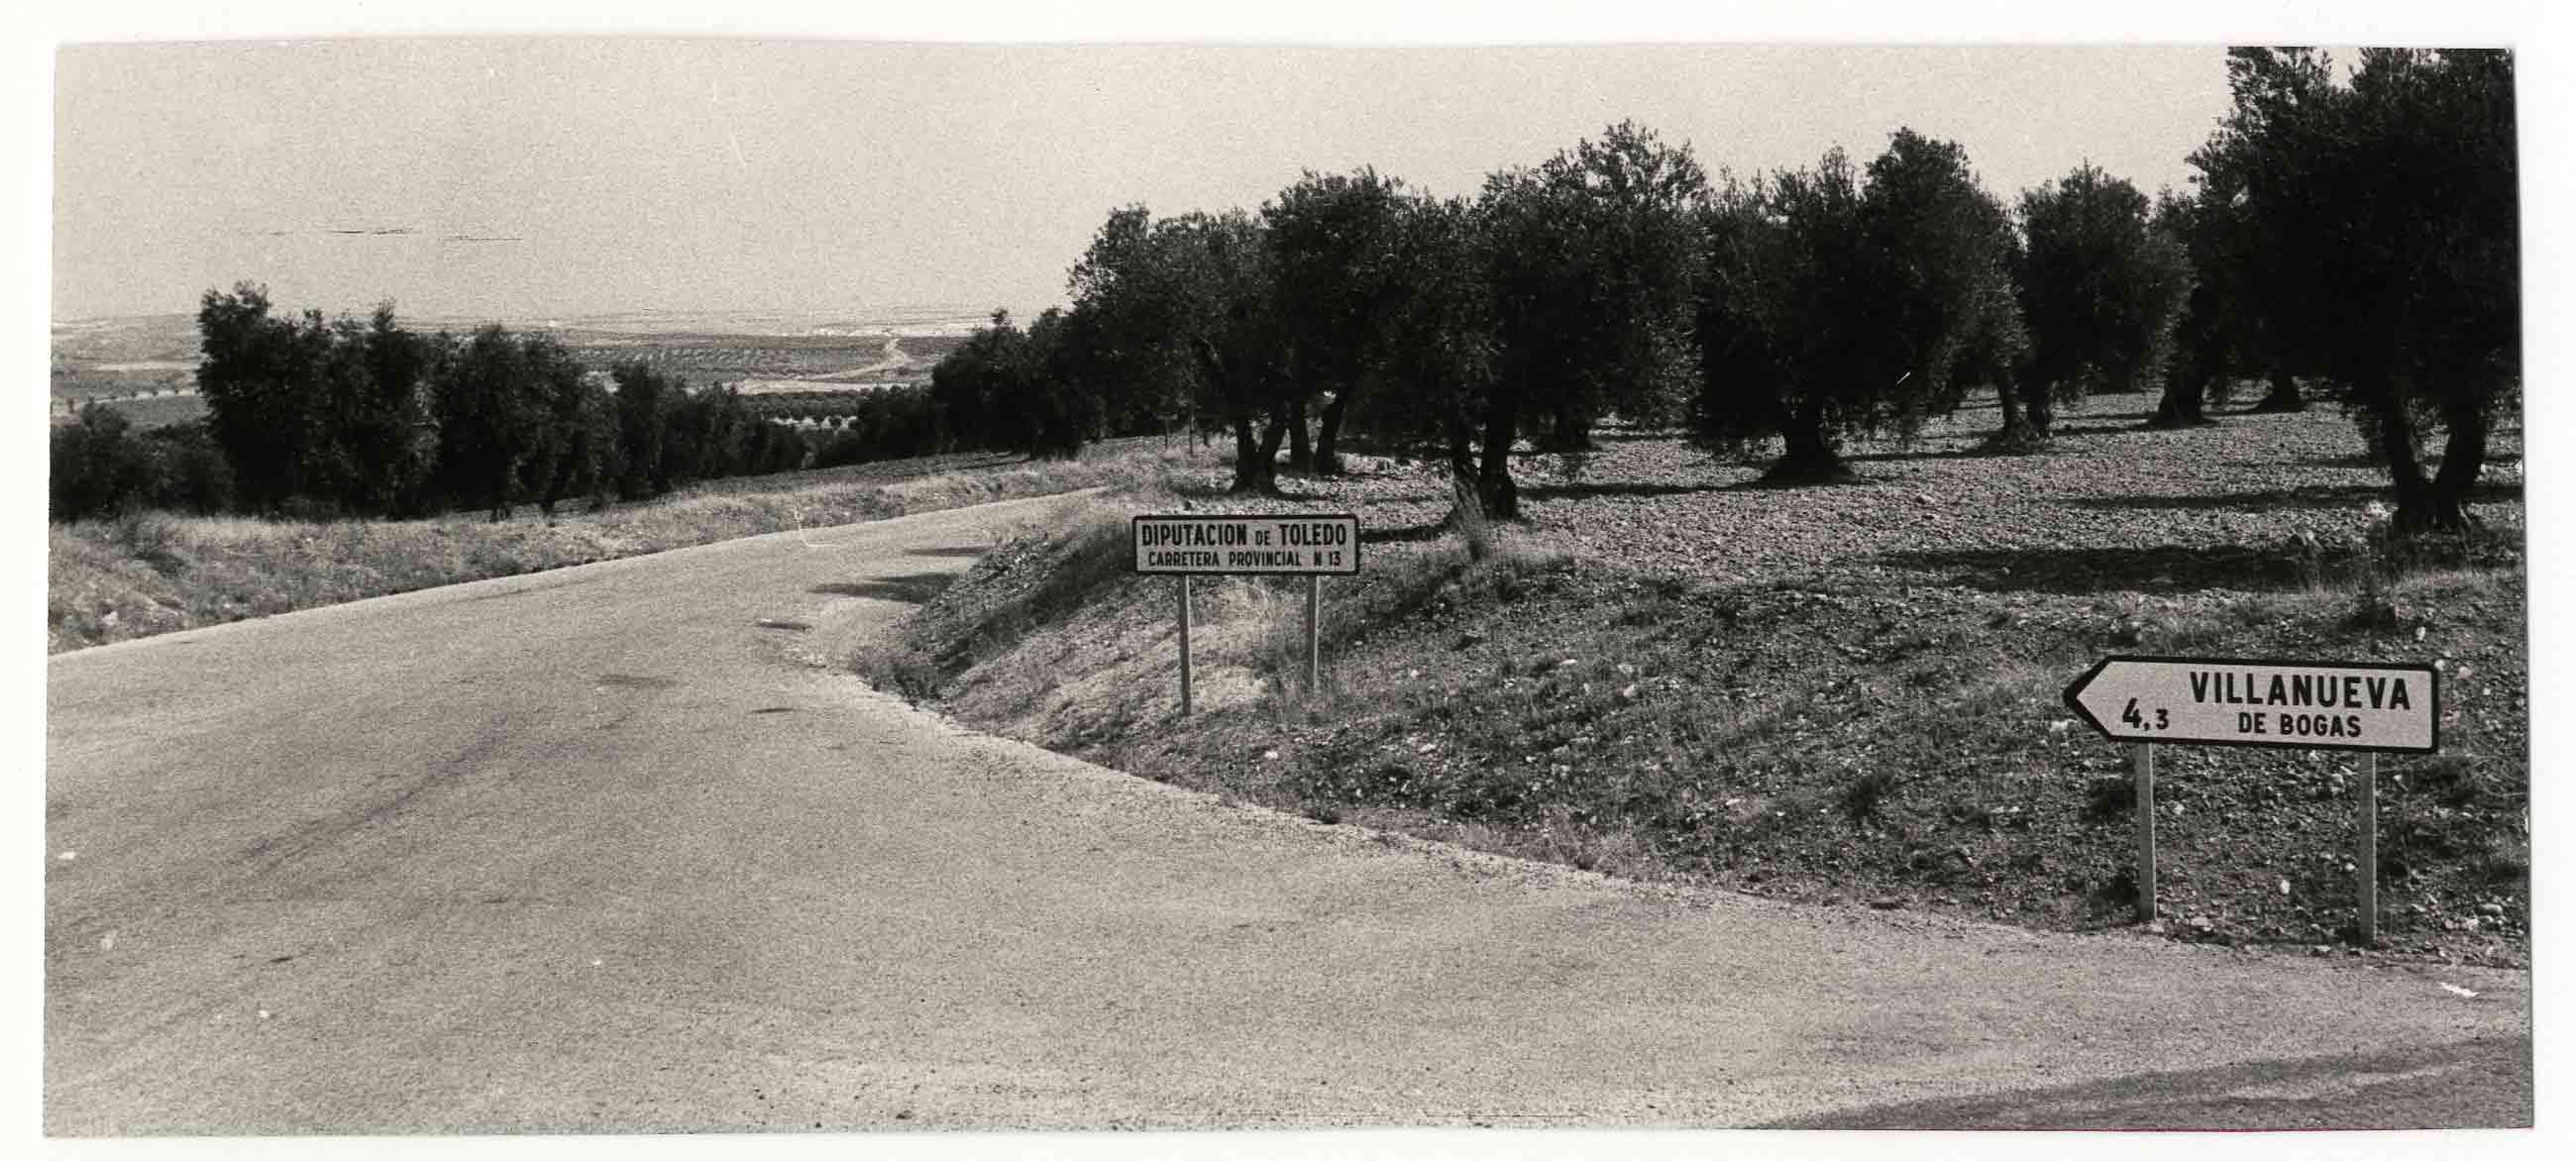 Villanueva de Bogas. Carretera provincial. 1972 (P-1497)